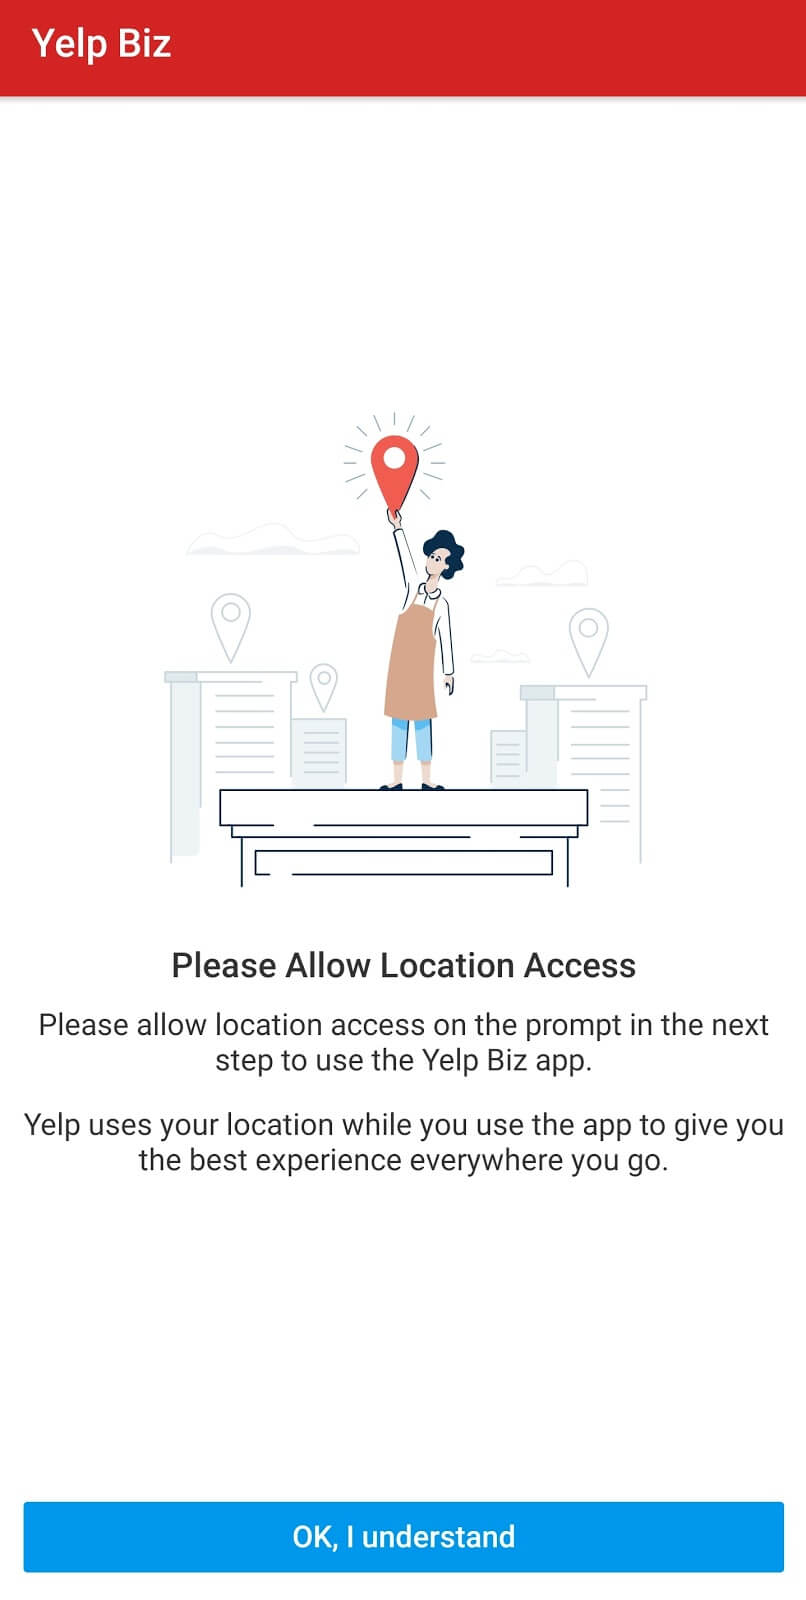 Yelp  para empresas: la página de la aplicación para permitir el acceso a la ubicación